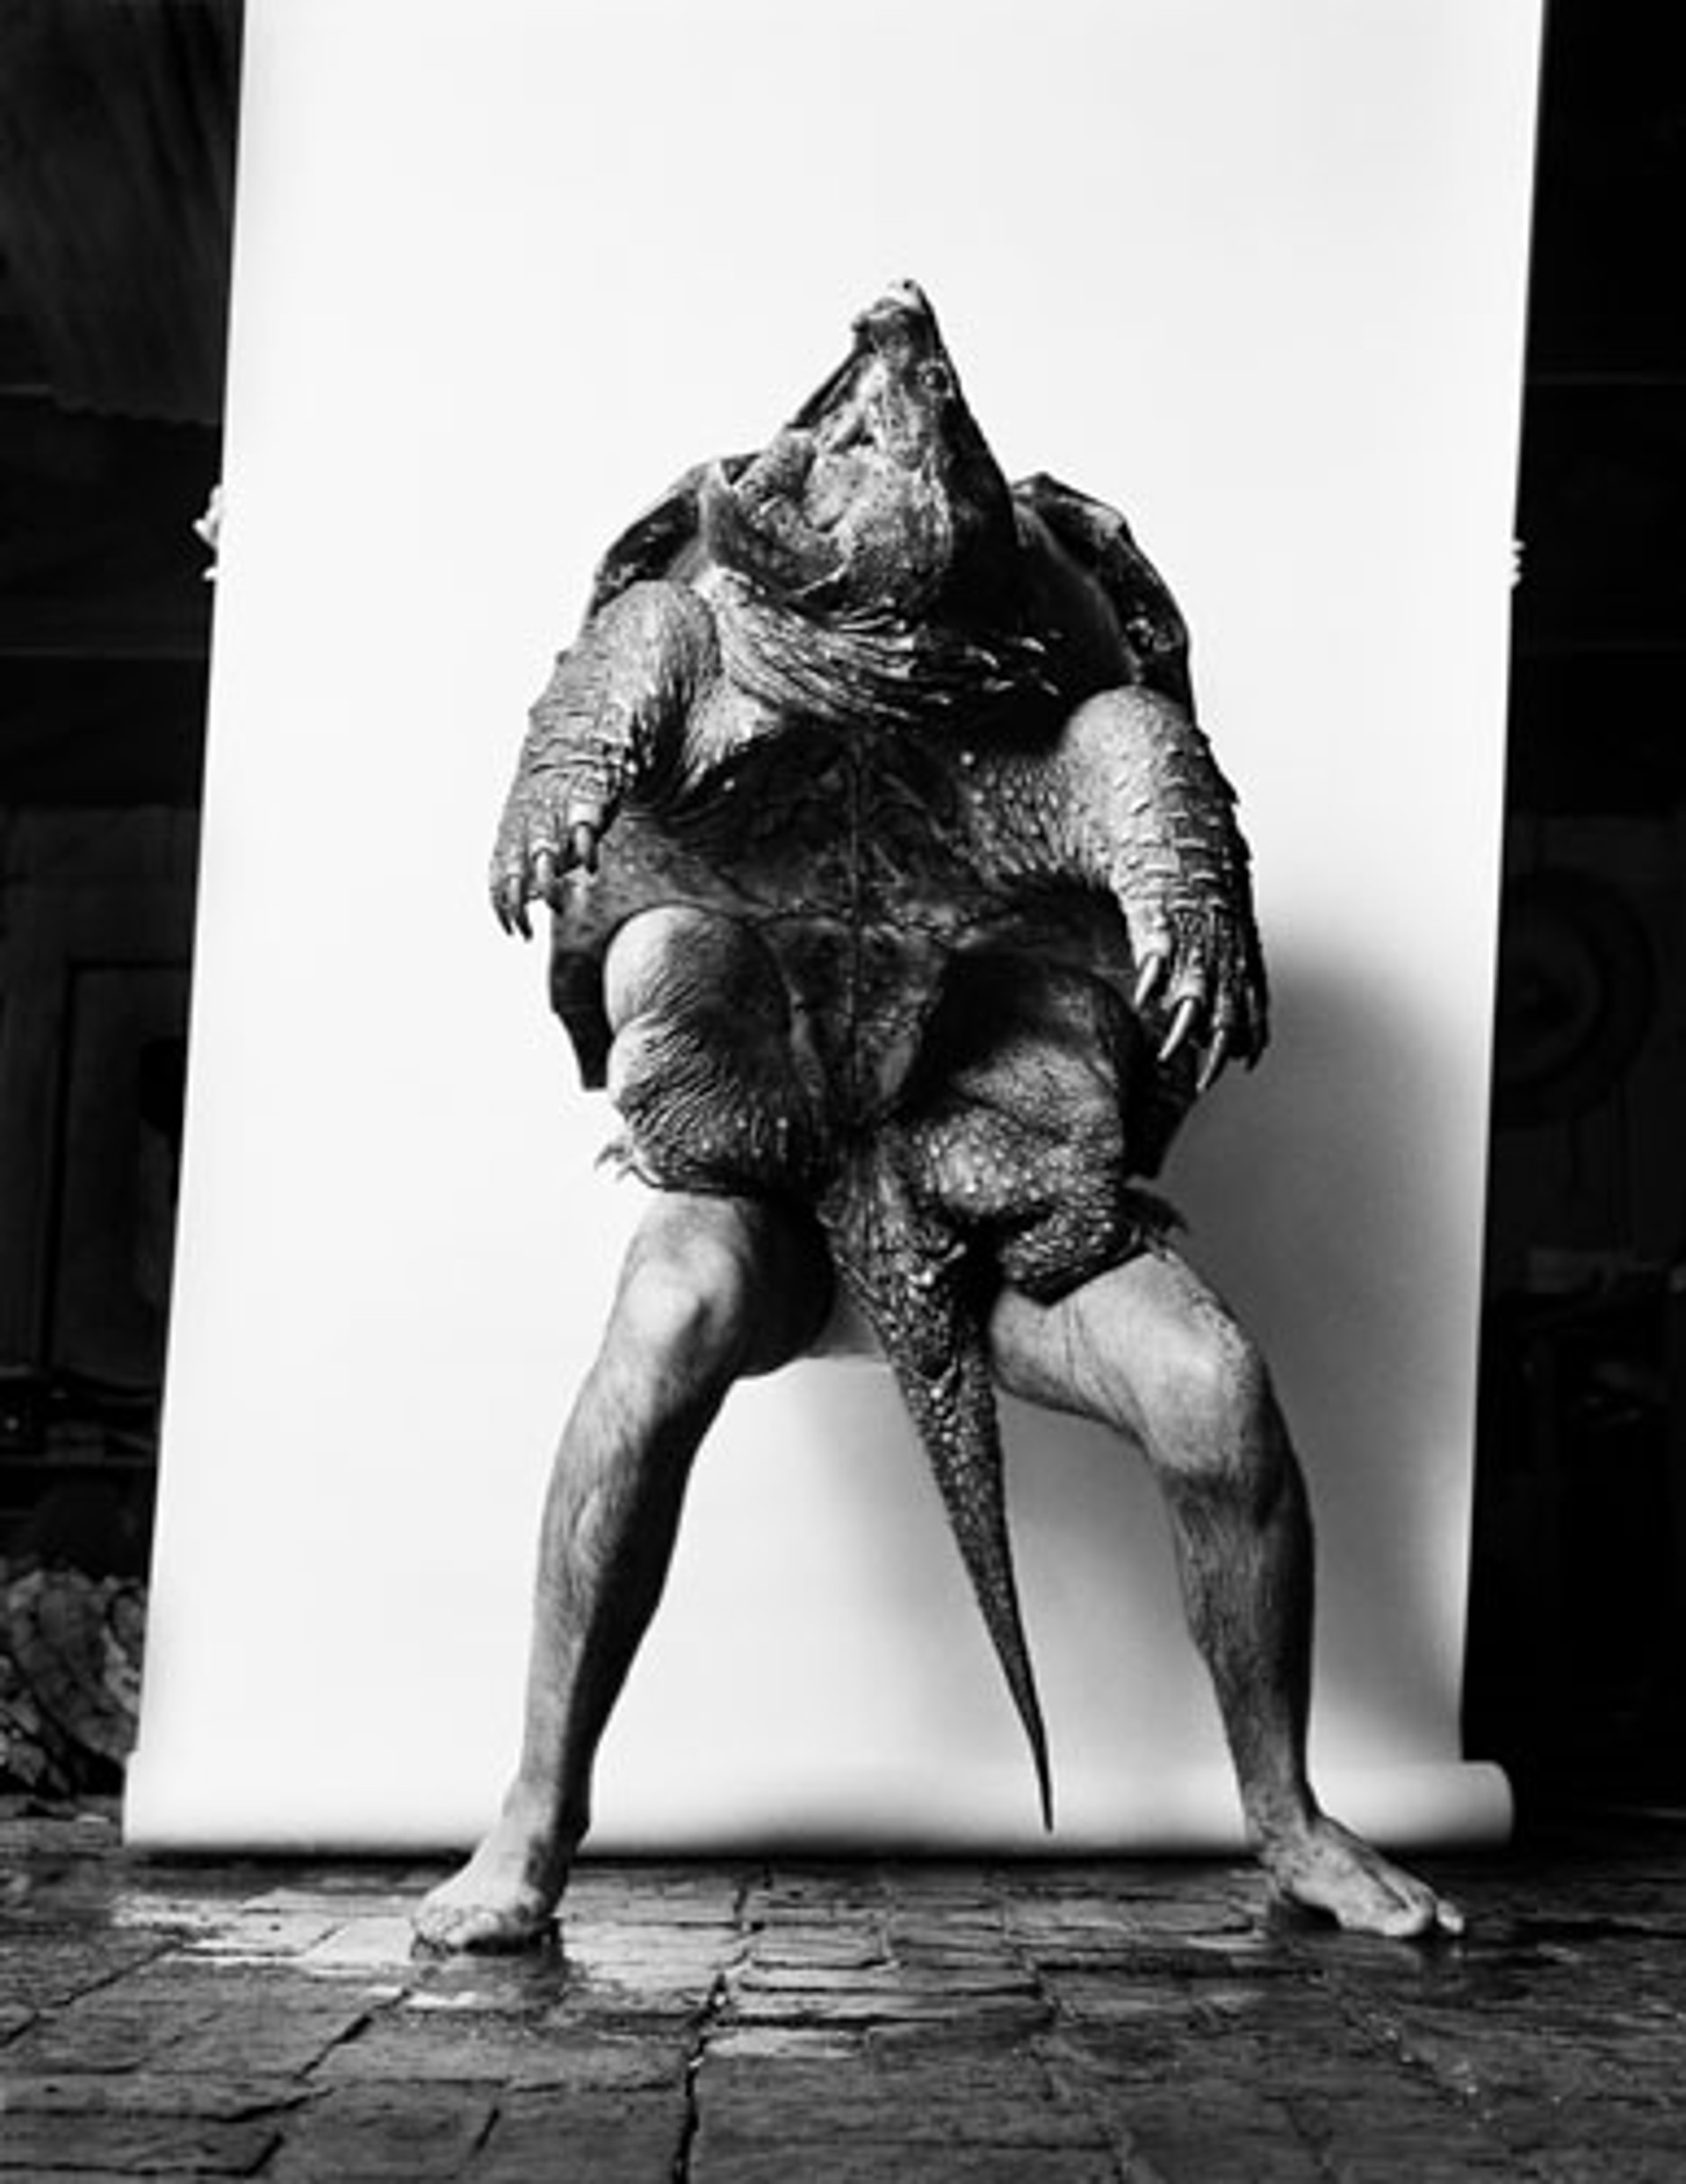 Turtle Man by George Krause